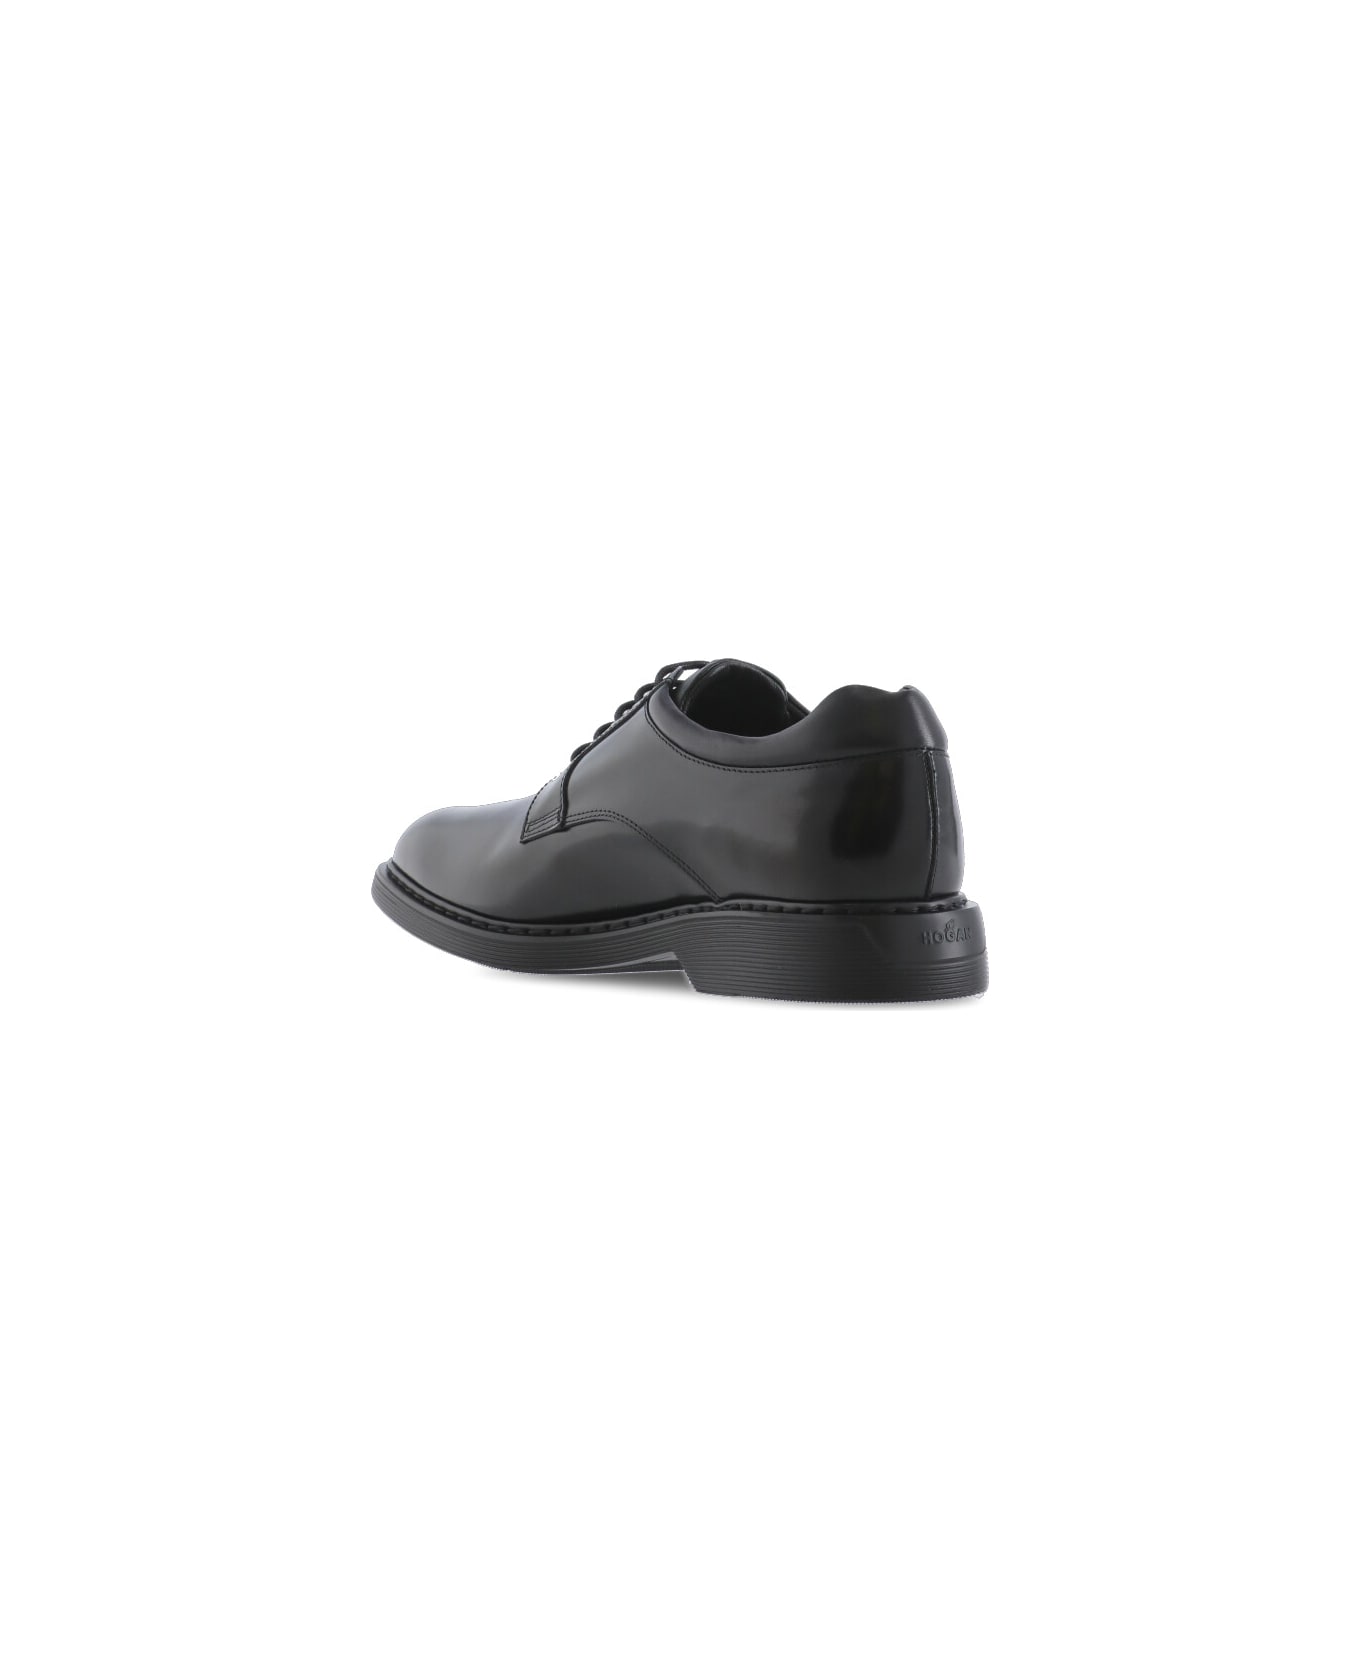 Hogan H576 Lace-up Shoes - Black フラットシューズ